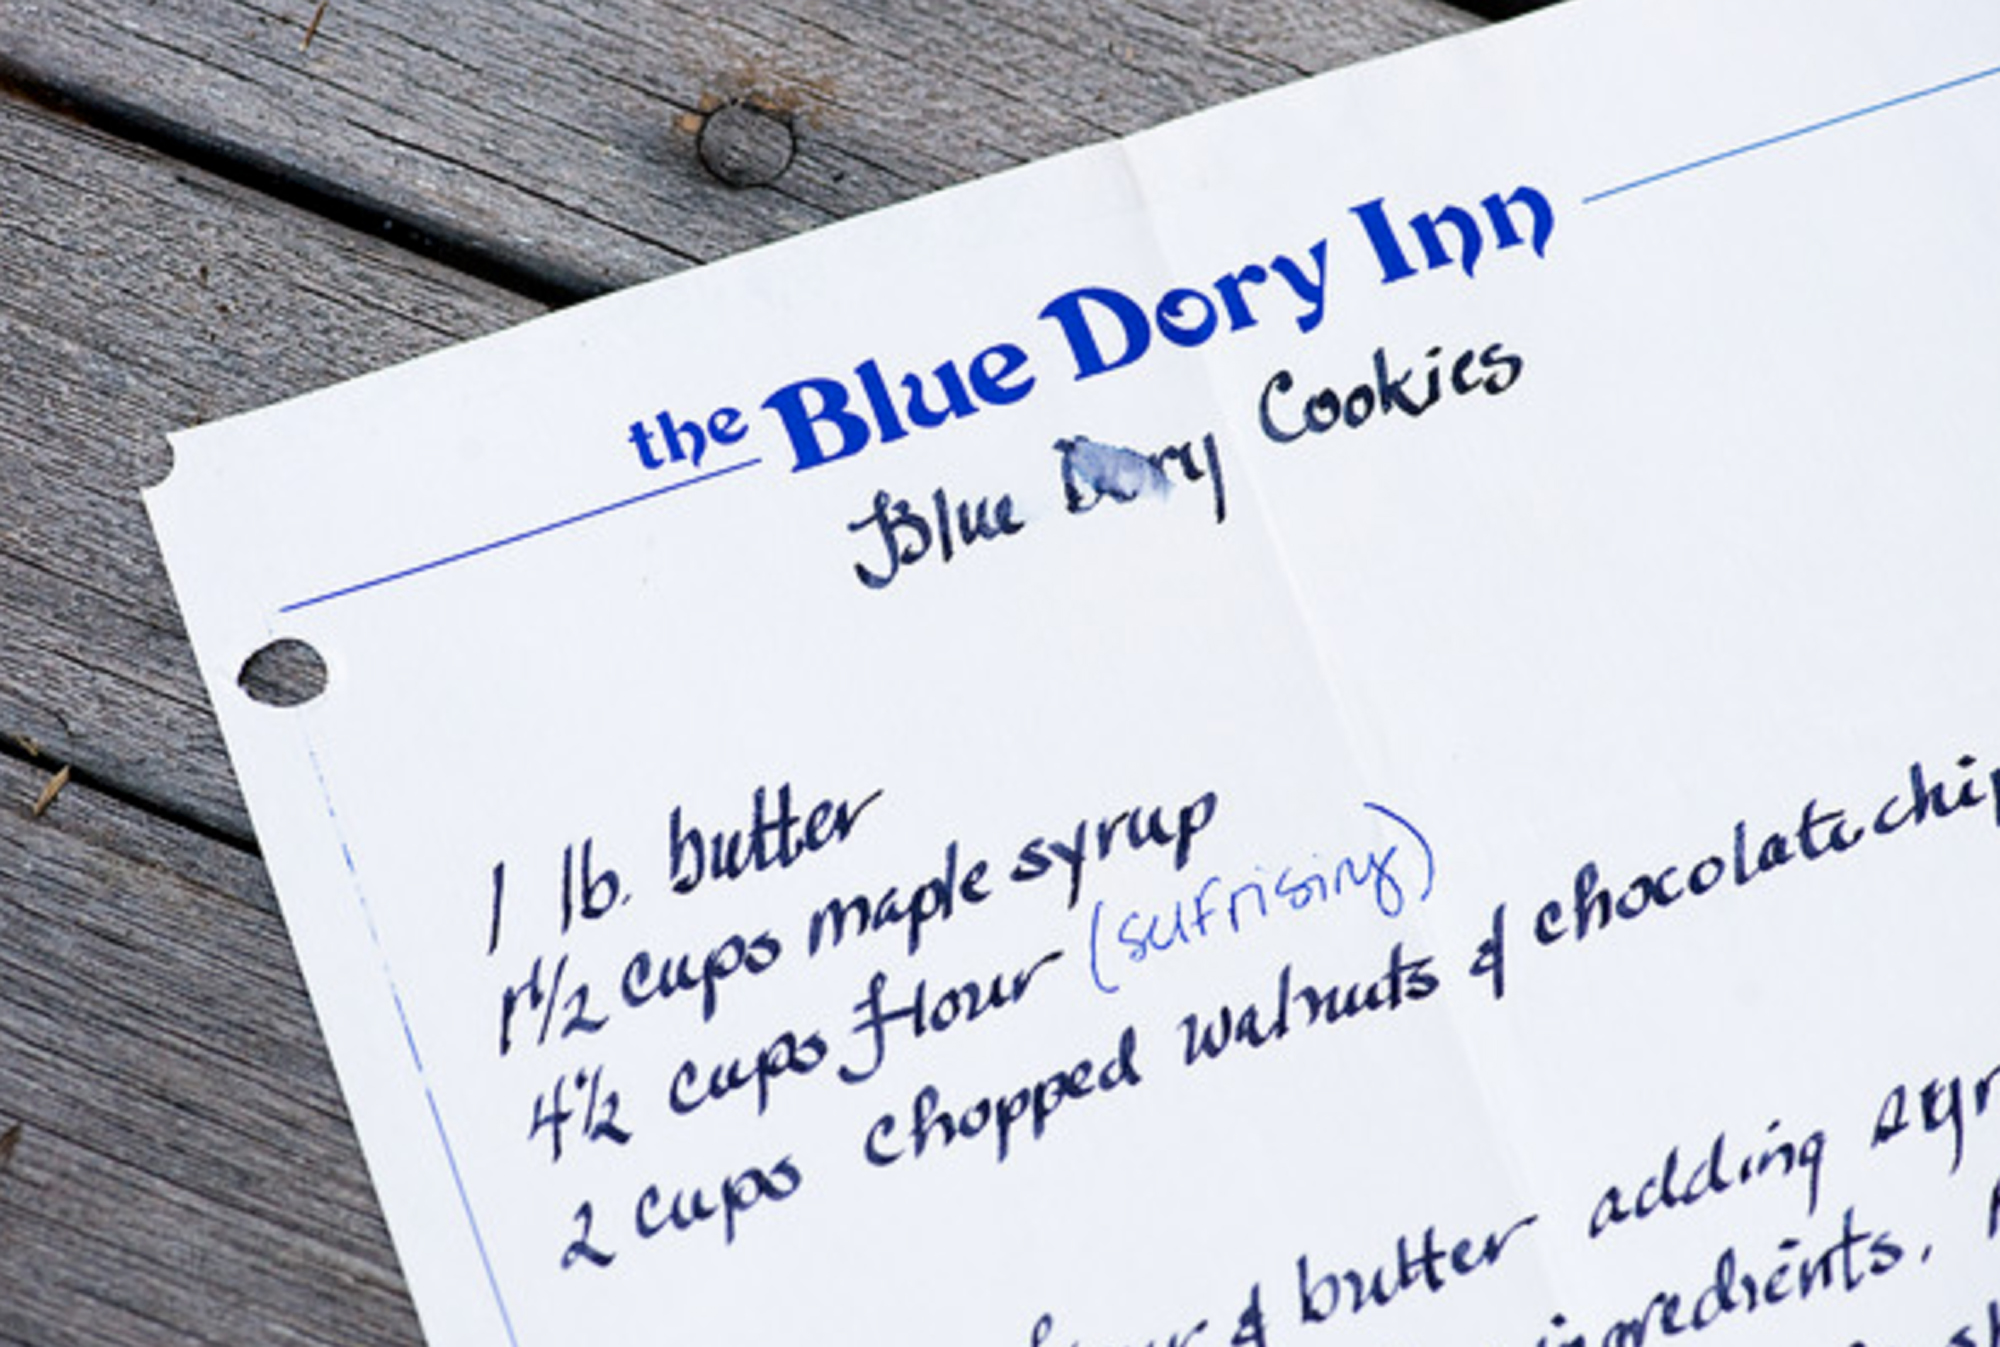 blue dory inn recipe